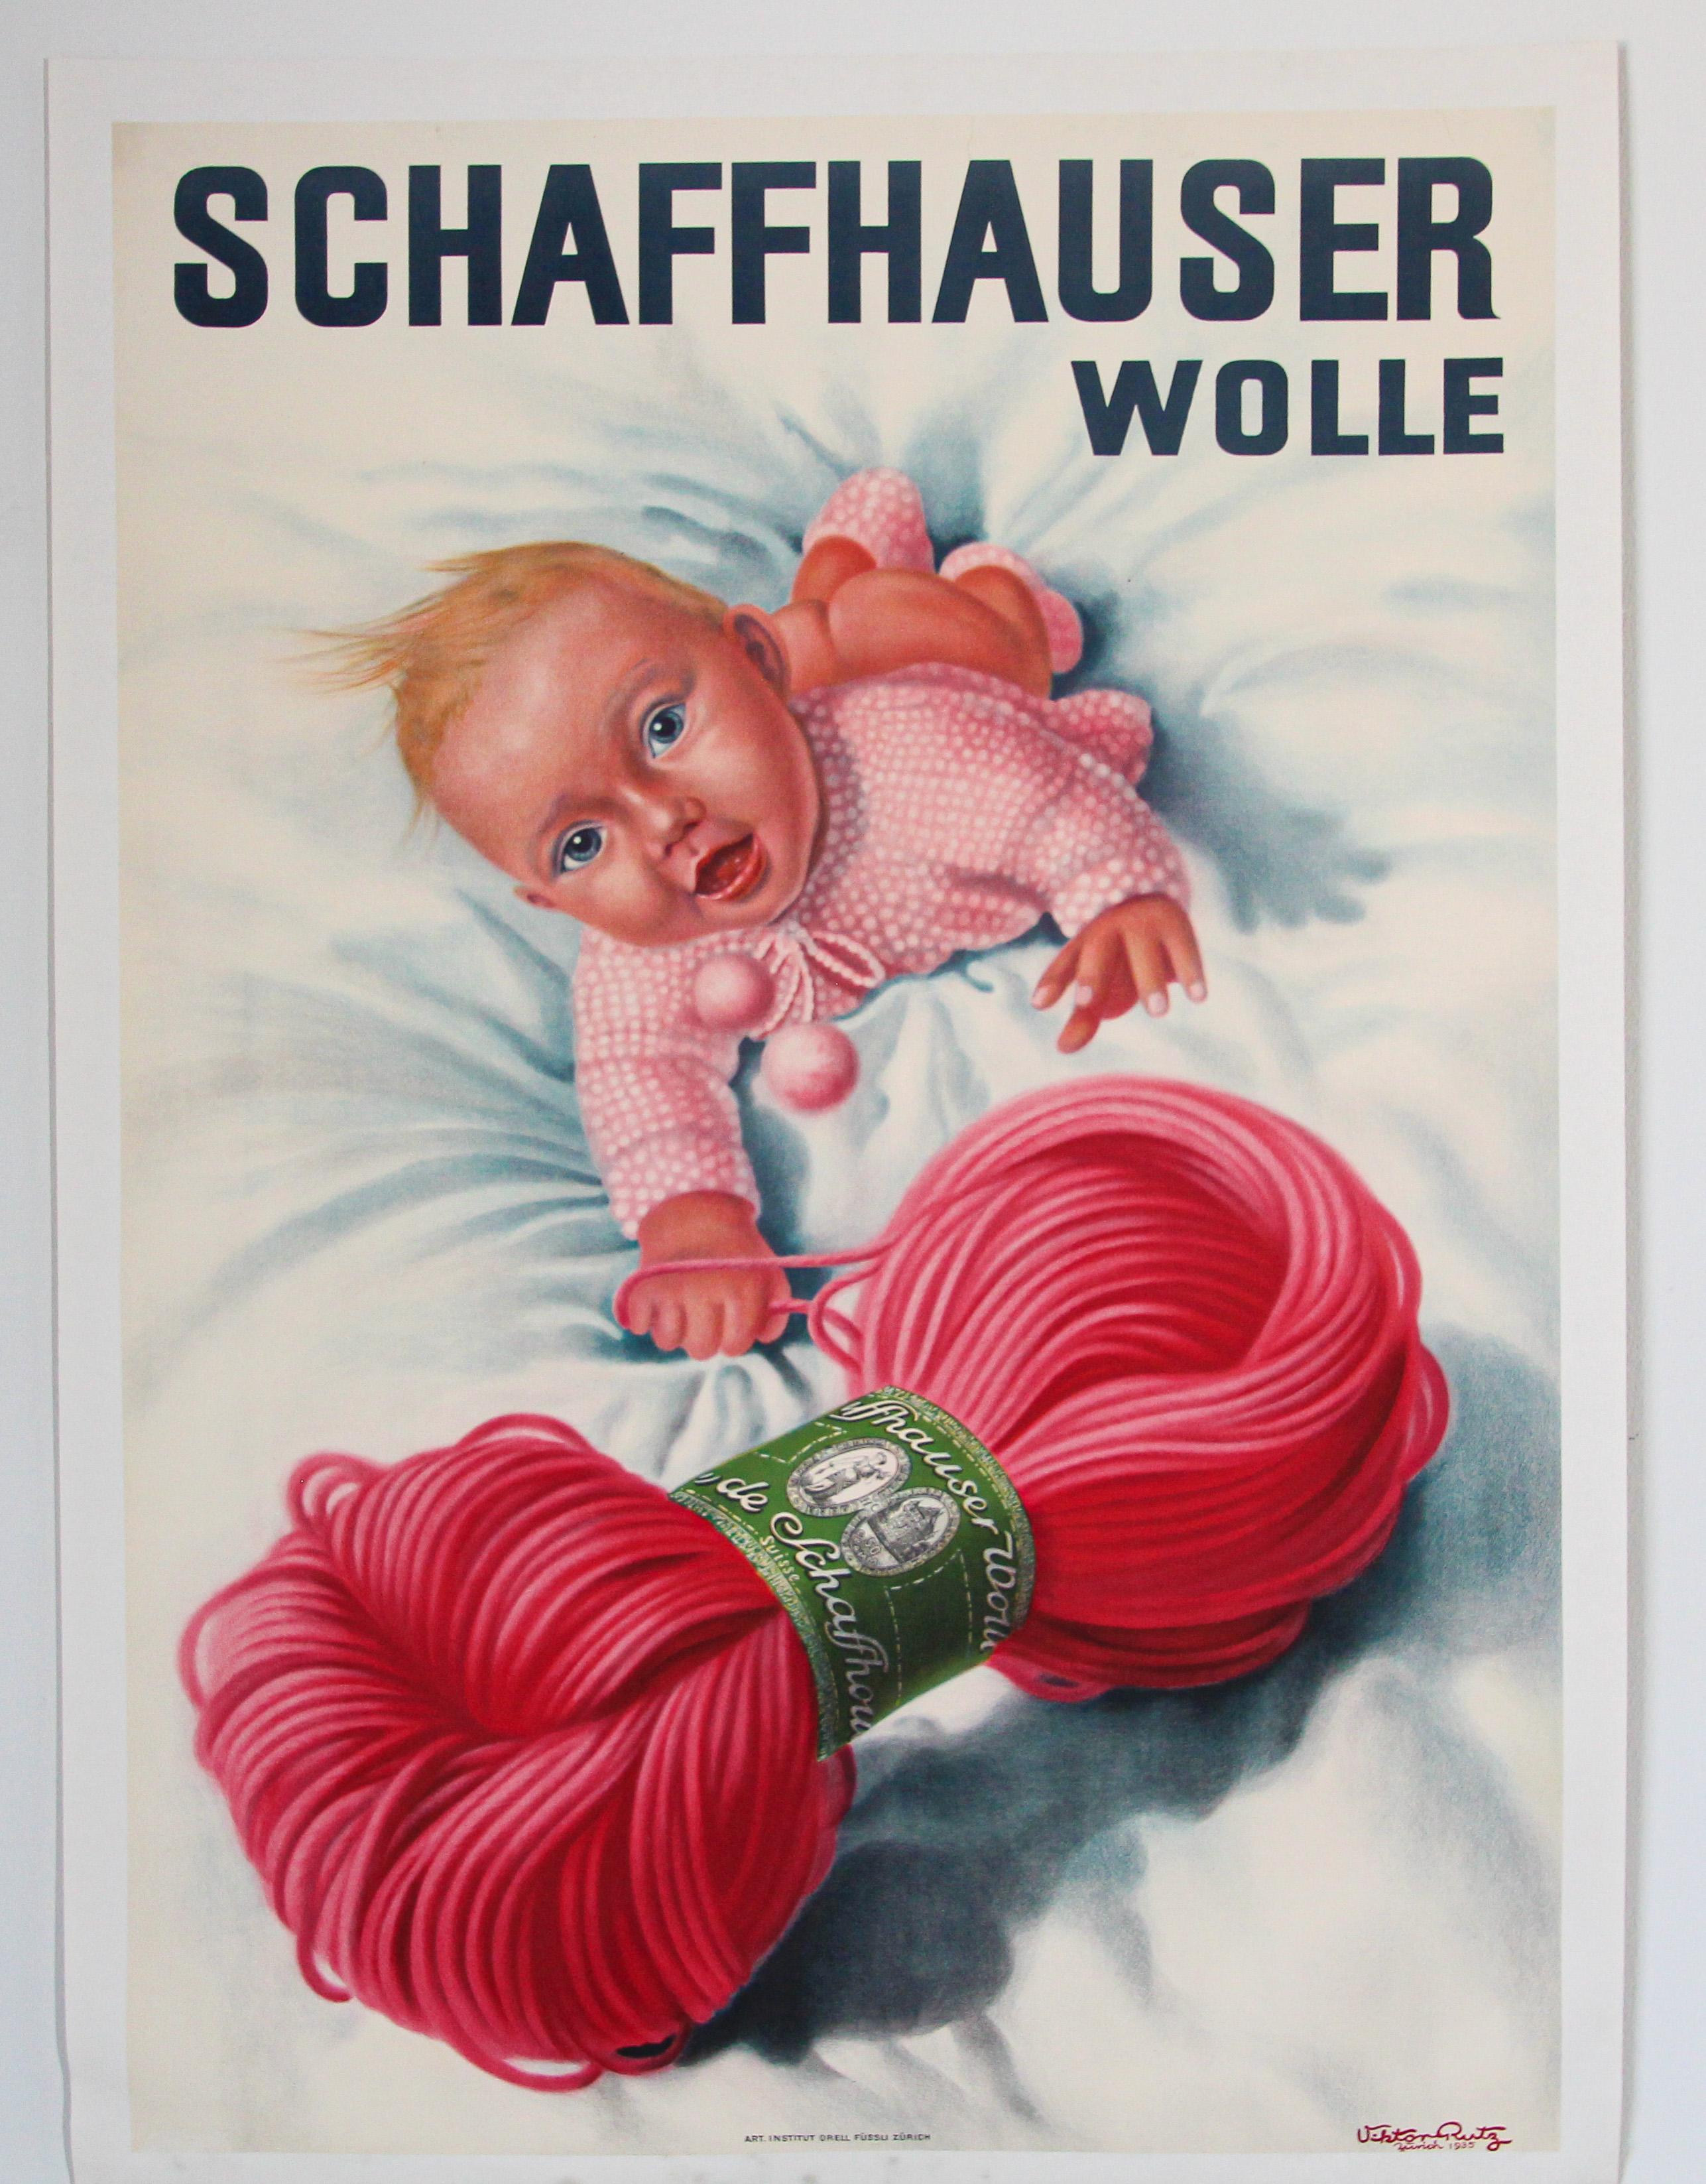 Original poster vintage Swiss Schaffhauser Wolle Wool Yarn Knitting 1935 Baby.
Il s'agit d'une 1ère impression originale de cette affiche de Viktor Rutz Zurich .
Imprimé en 1935, il a été créé pour faire la publicité de Schaffhauser